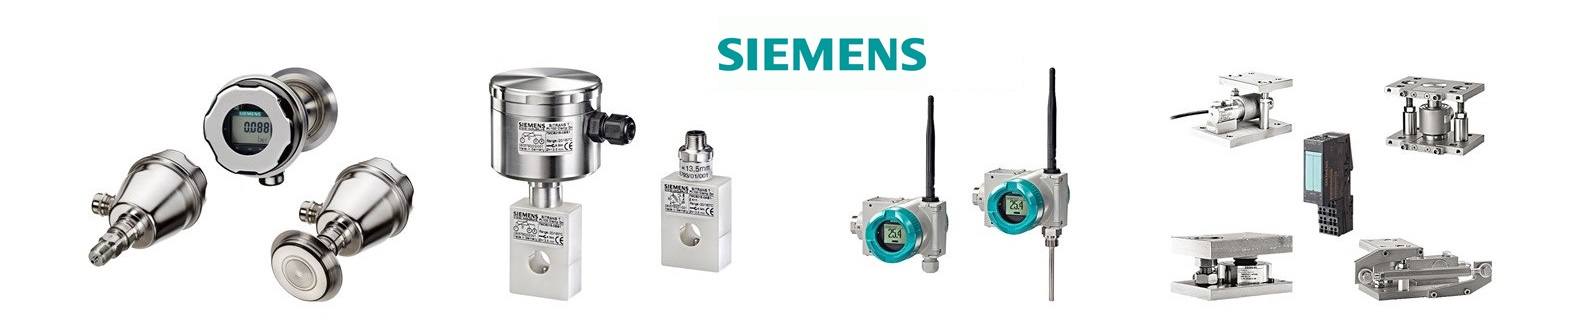 Productos Siemens